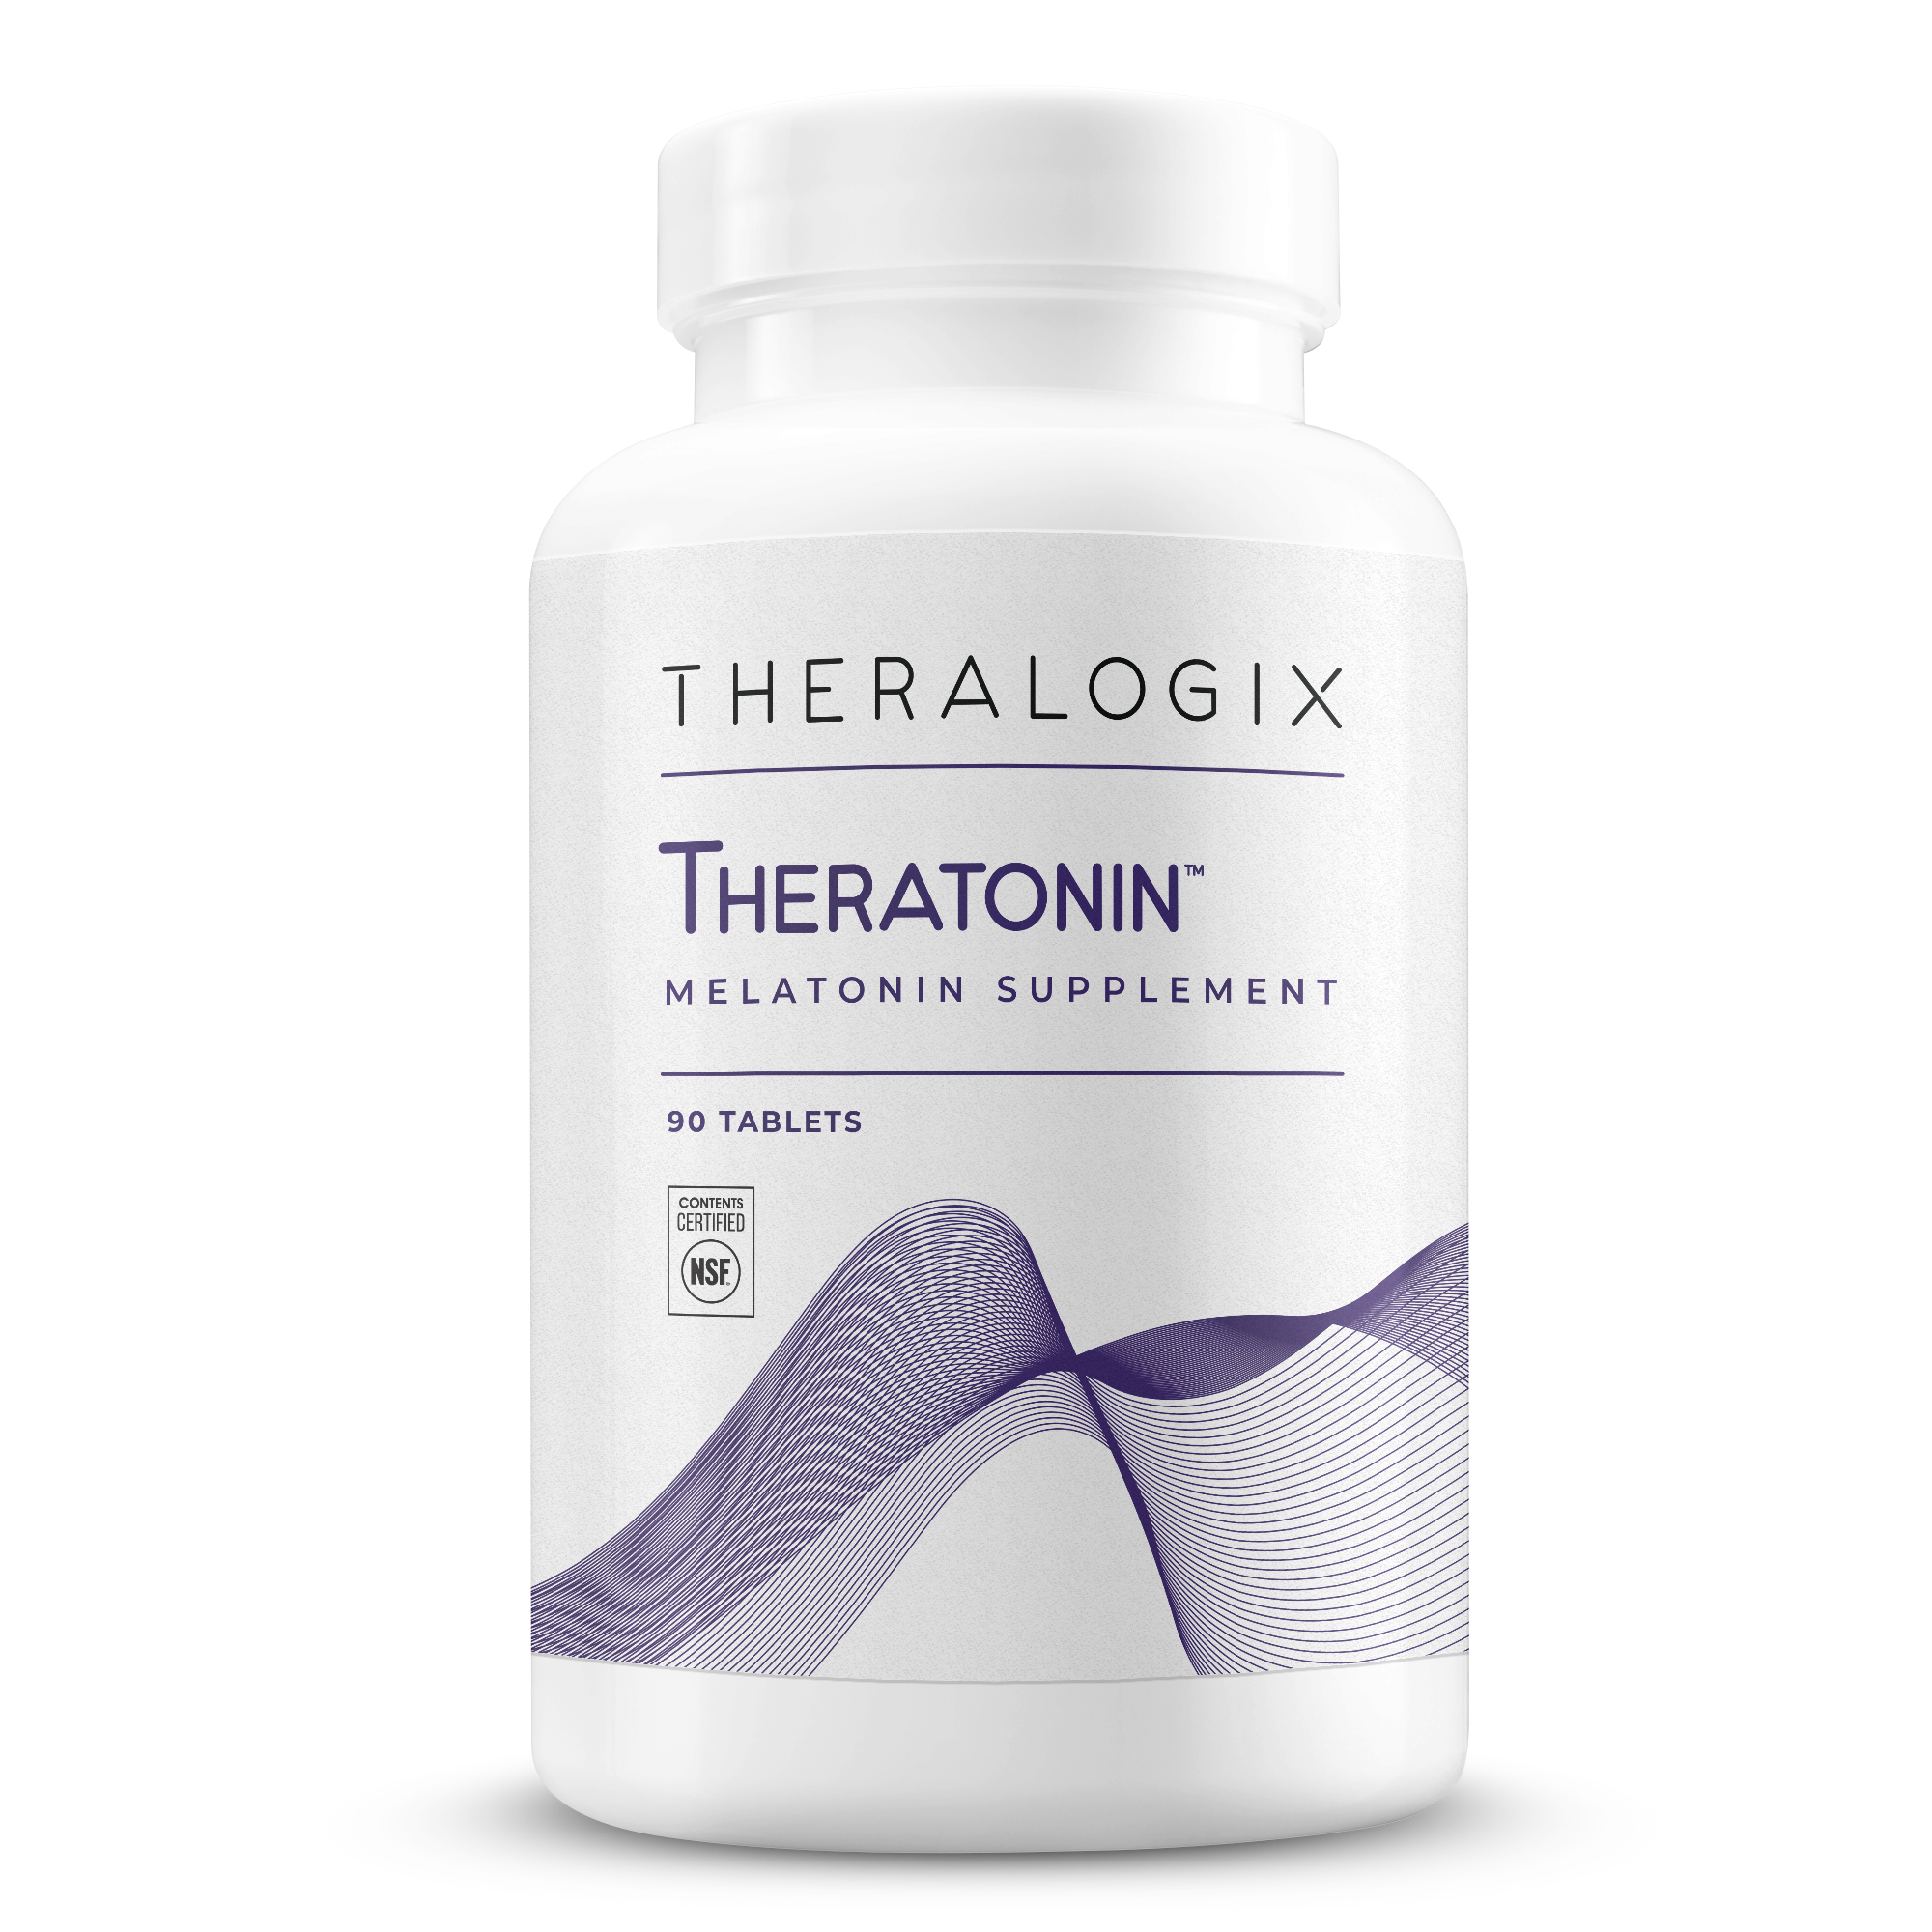 Theratonin™ Melatonin Supplement